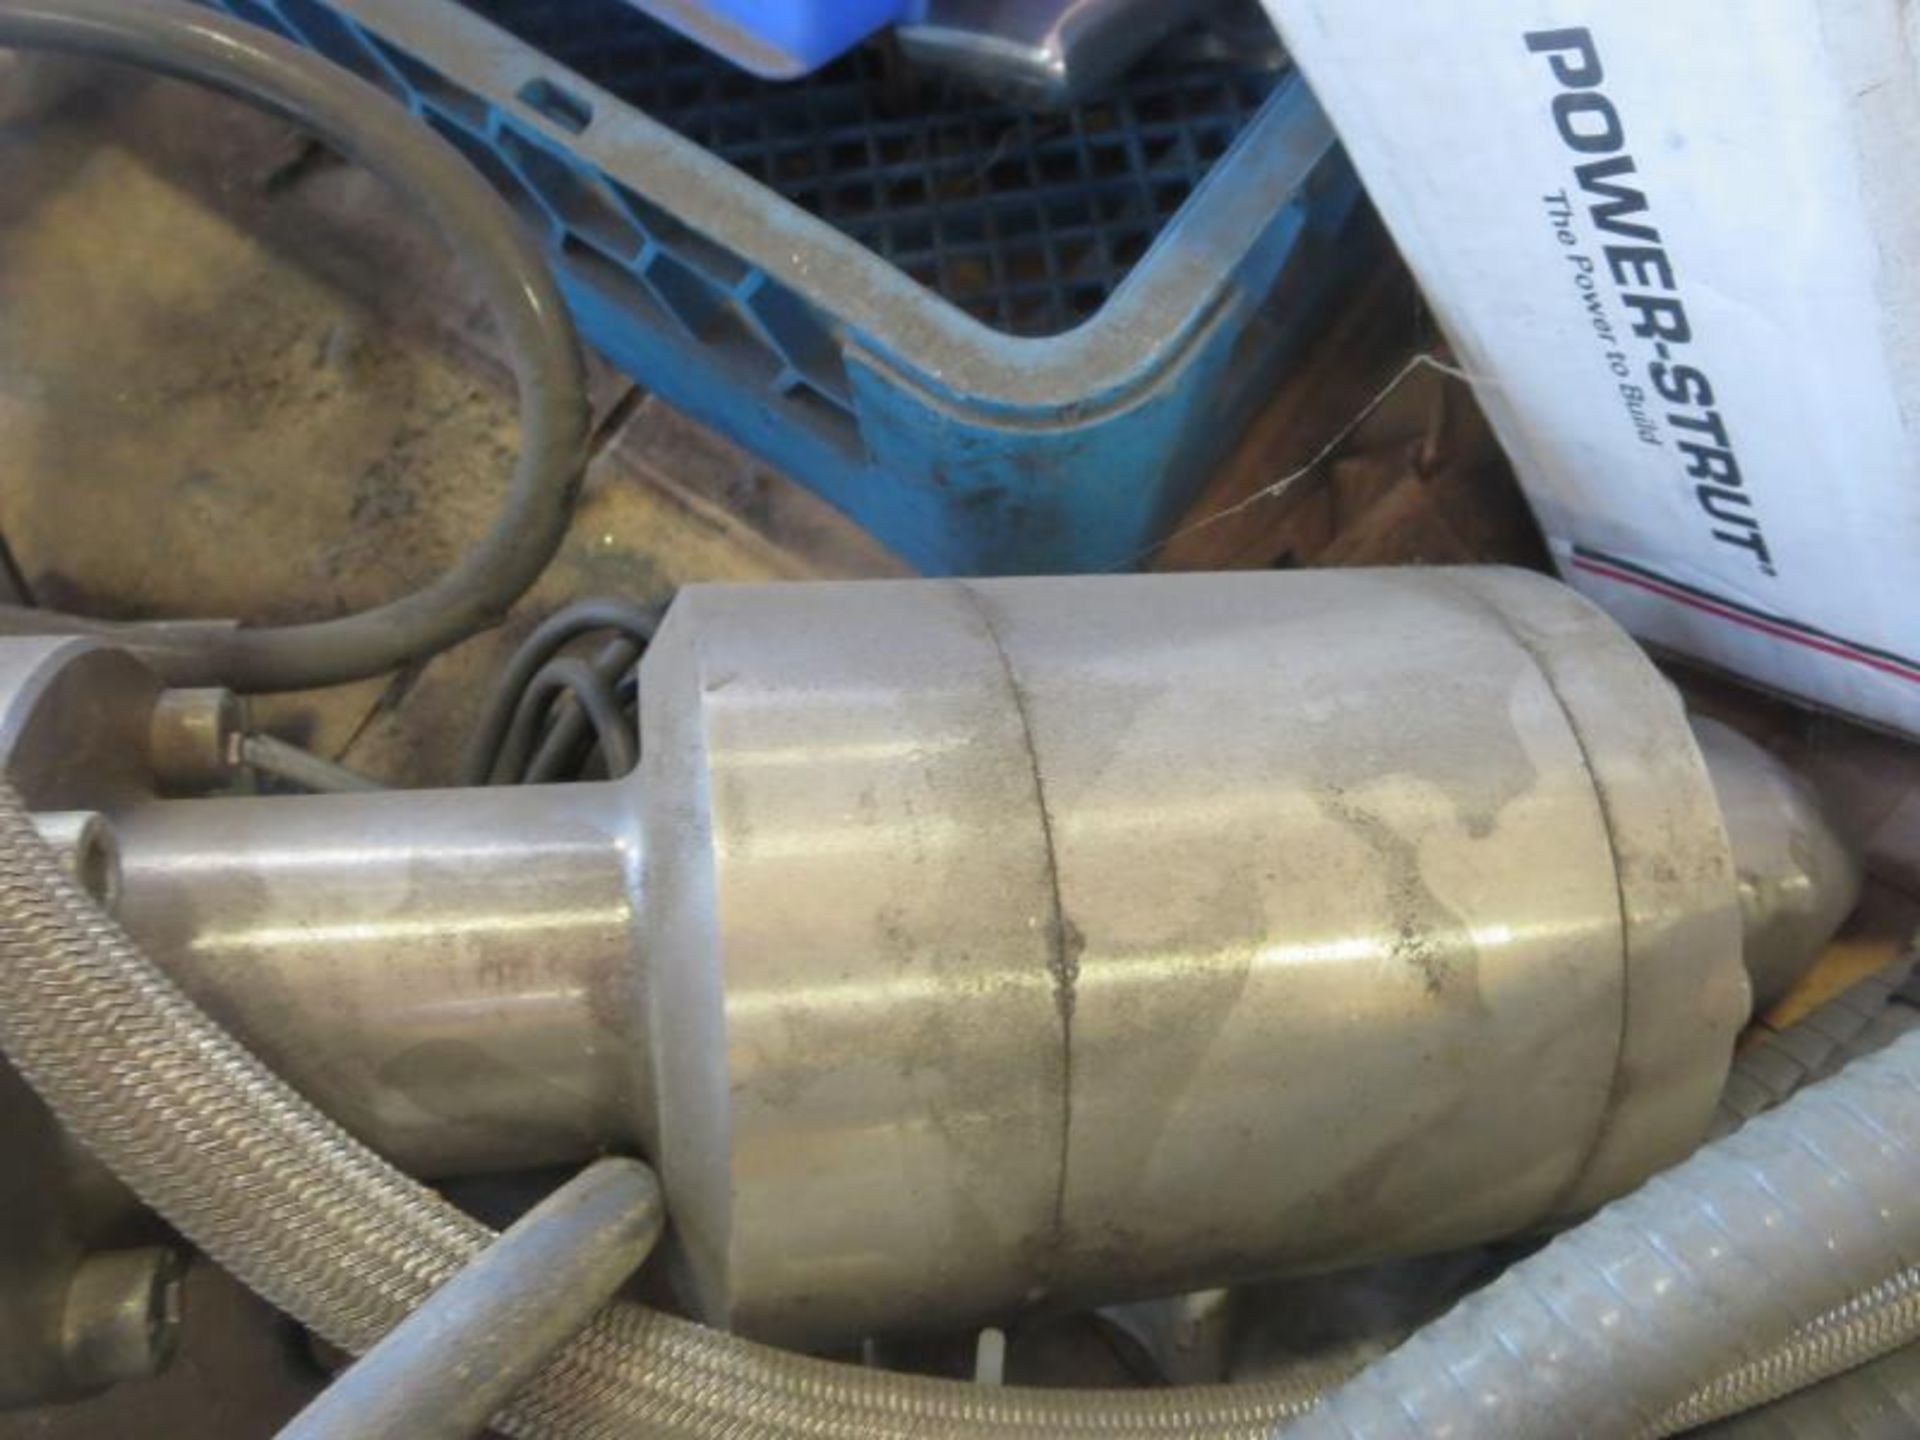 Kremlin Rexson Type T 4 Spray Pump with skid of misc parts. Hit # 2178692. M6-M7. Asset Located at - Bild 4 aus 4